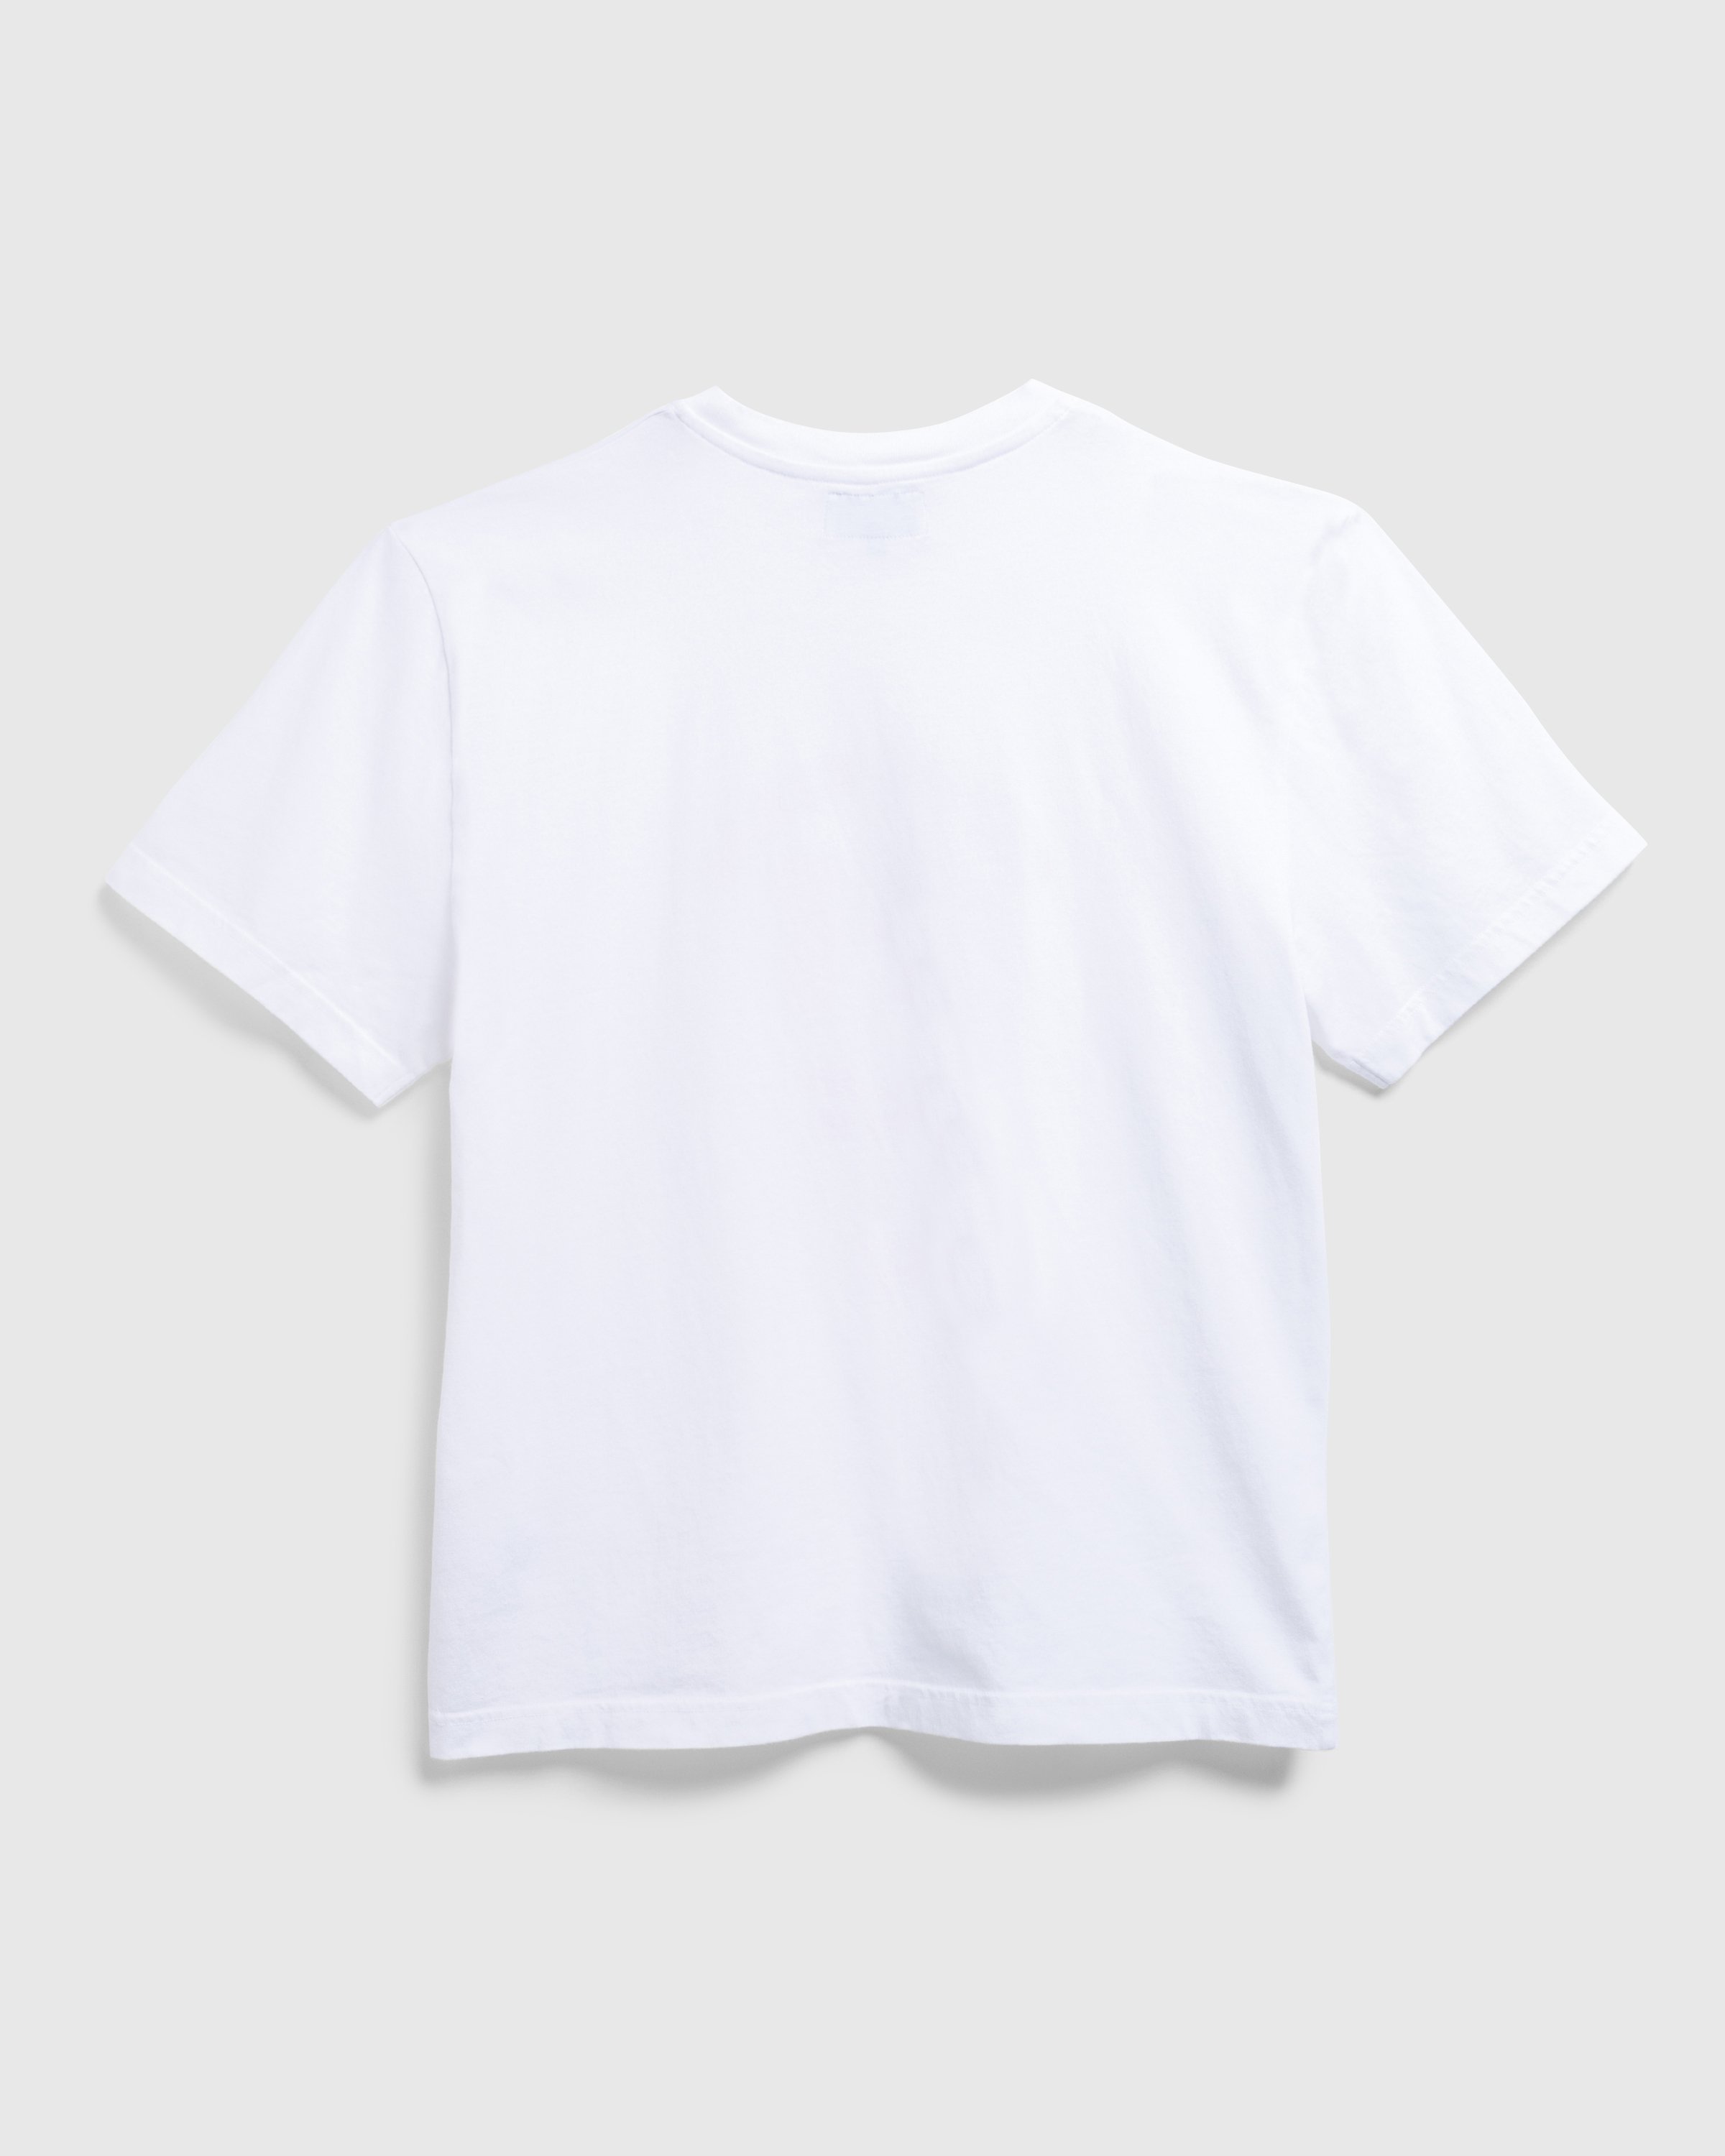 Carne Bollente x Highsnobiety – Carne Döner Delights T-Shirt White ...